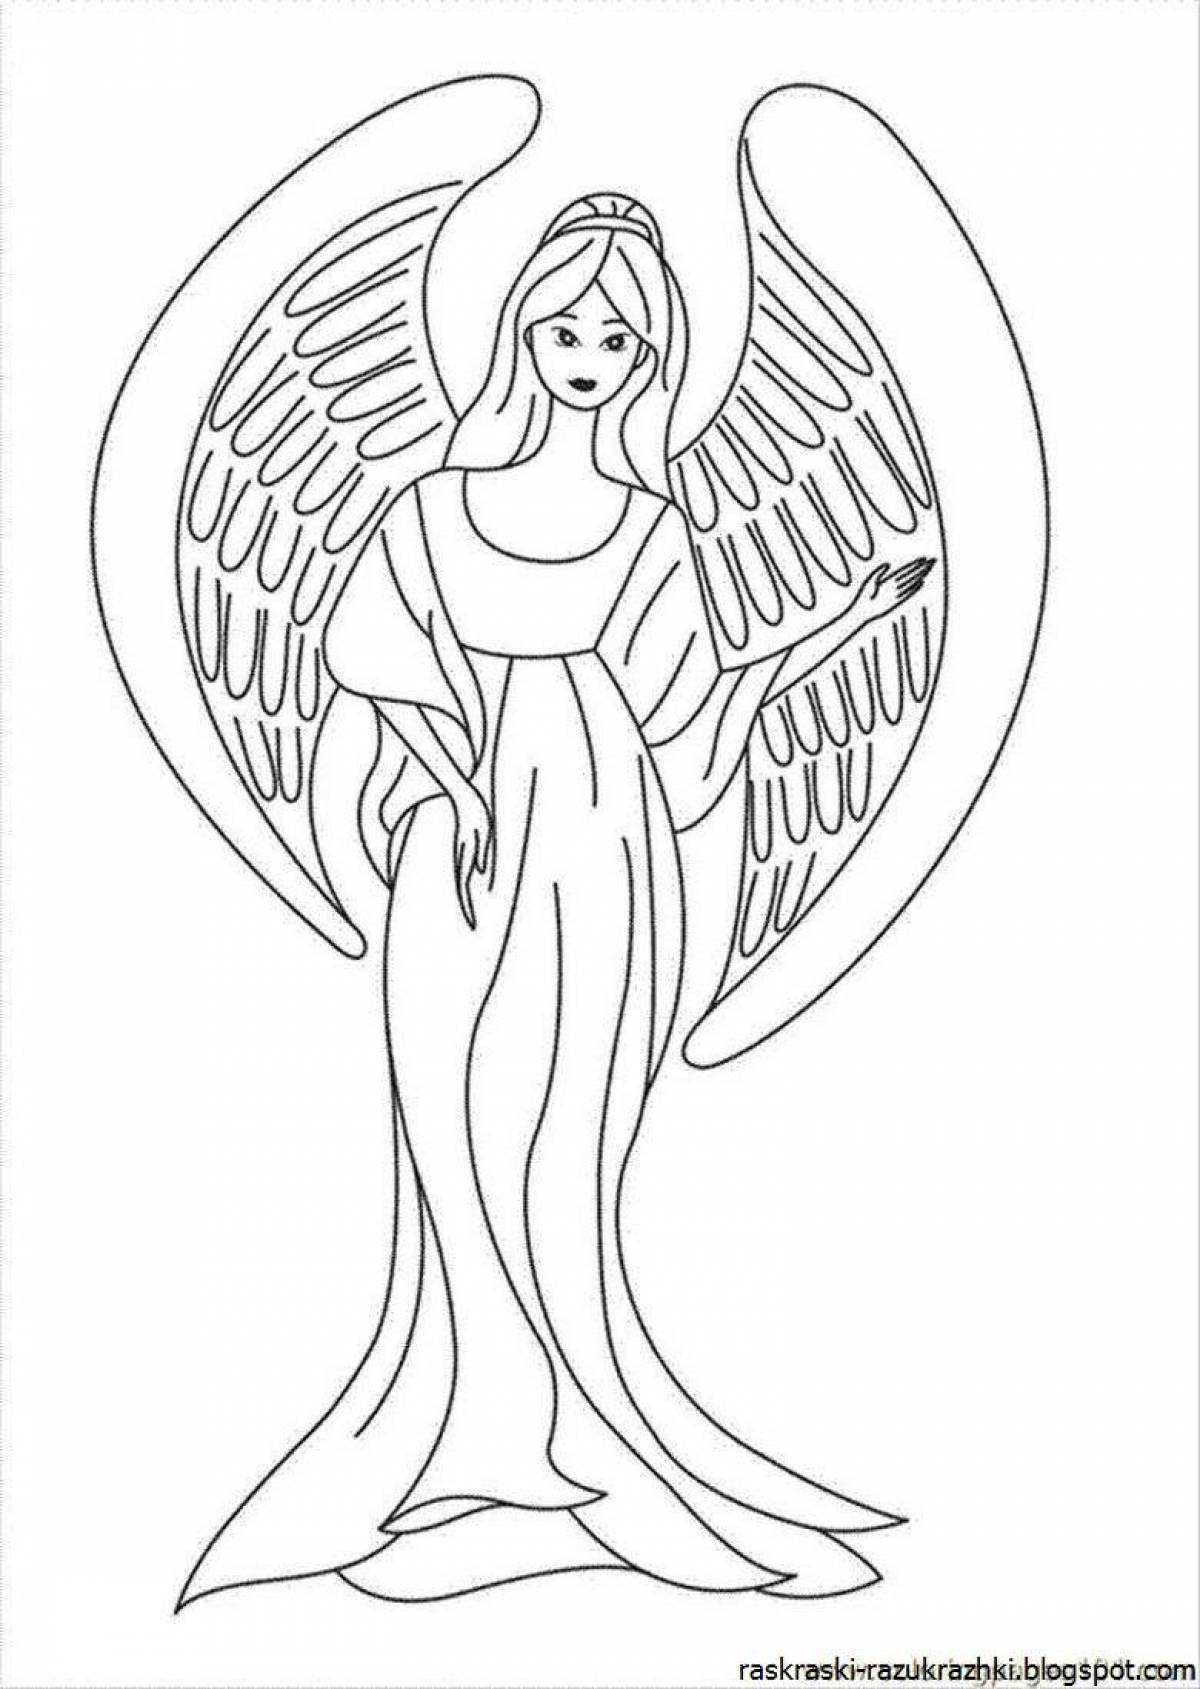 Божественная раскраска ангел с крыльями для детей